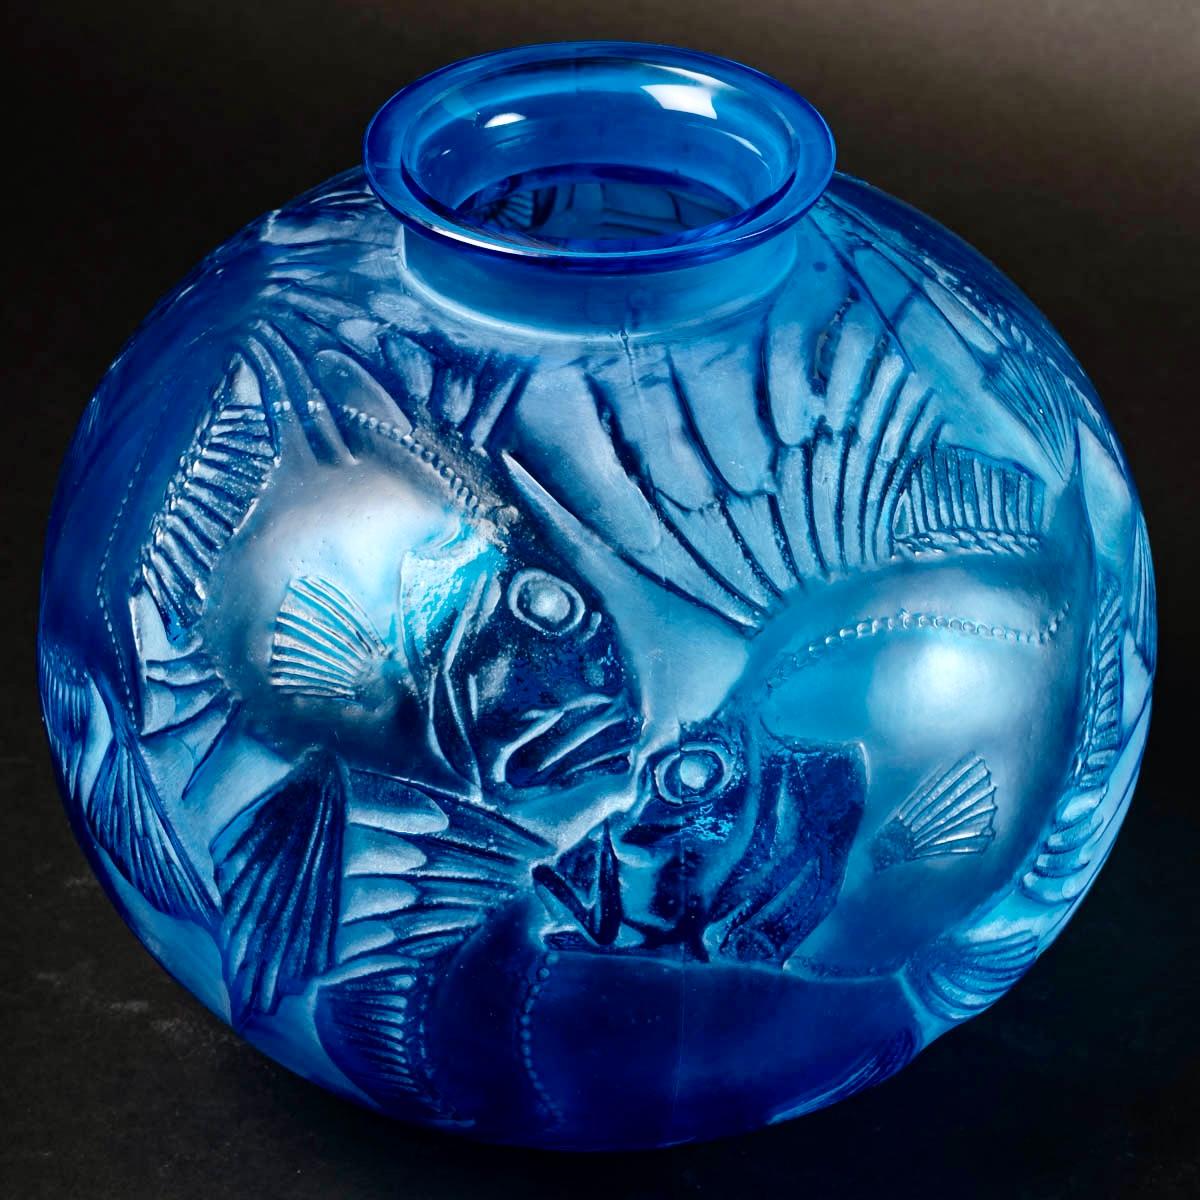 1921 Ren Lalique Poissons-Vase aus elektrisch blauem Glas mit weißer Patina, Fische 1